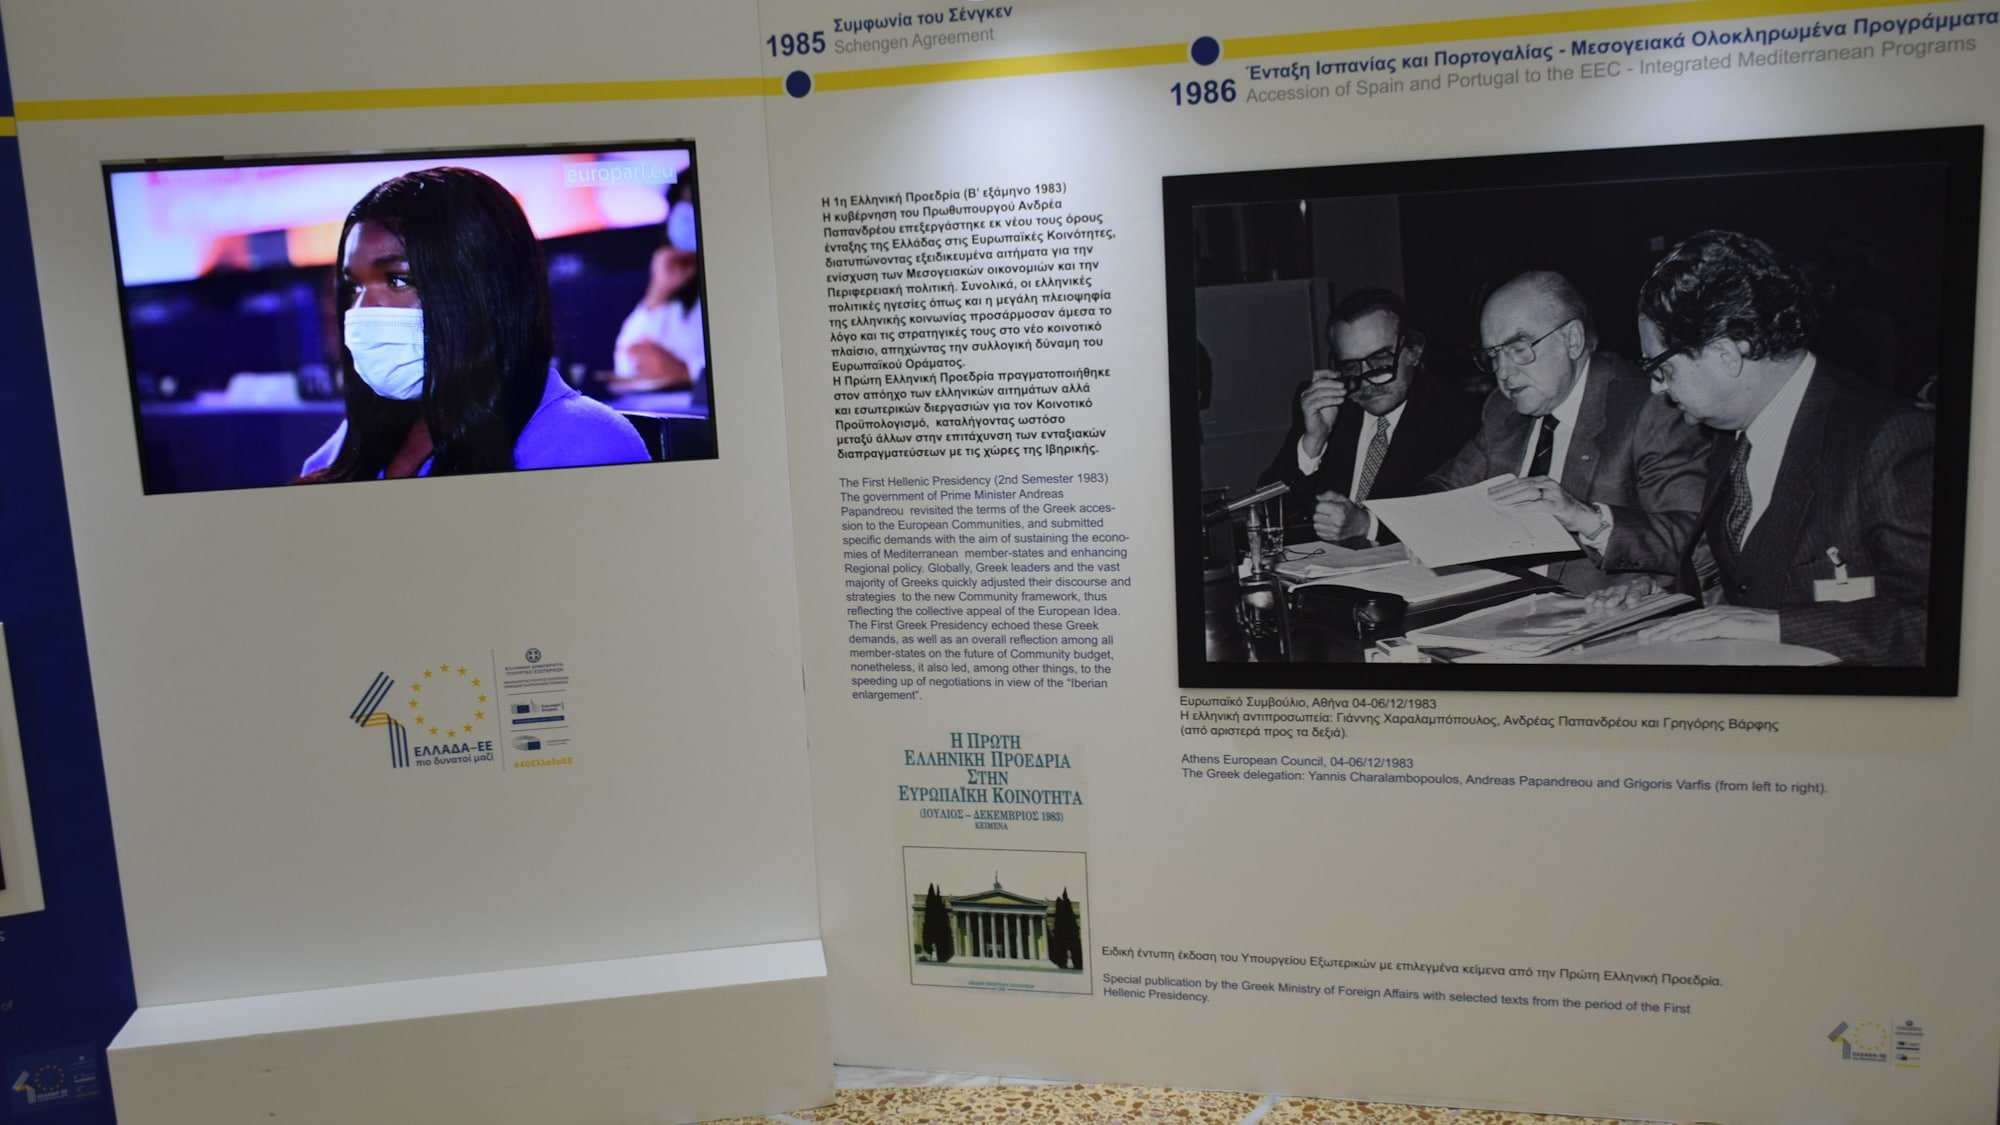 Επιμελητήριο Αχαΐας: Φωτογραφική έκθεση για τη 40χρονη ιστορία της Ελλάδας στην Ε.Ε. - Επίσκεψη Φαρμάκη ΦΩΤΟ